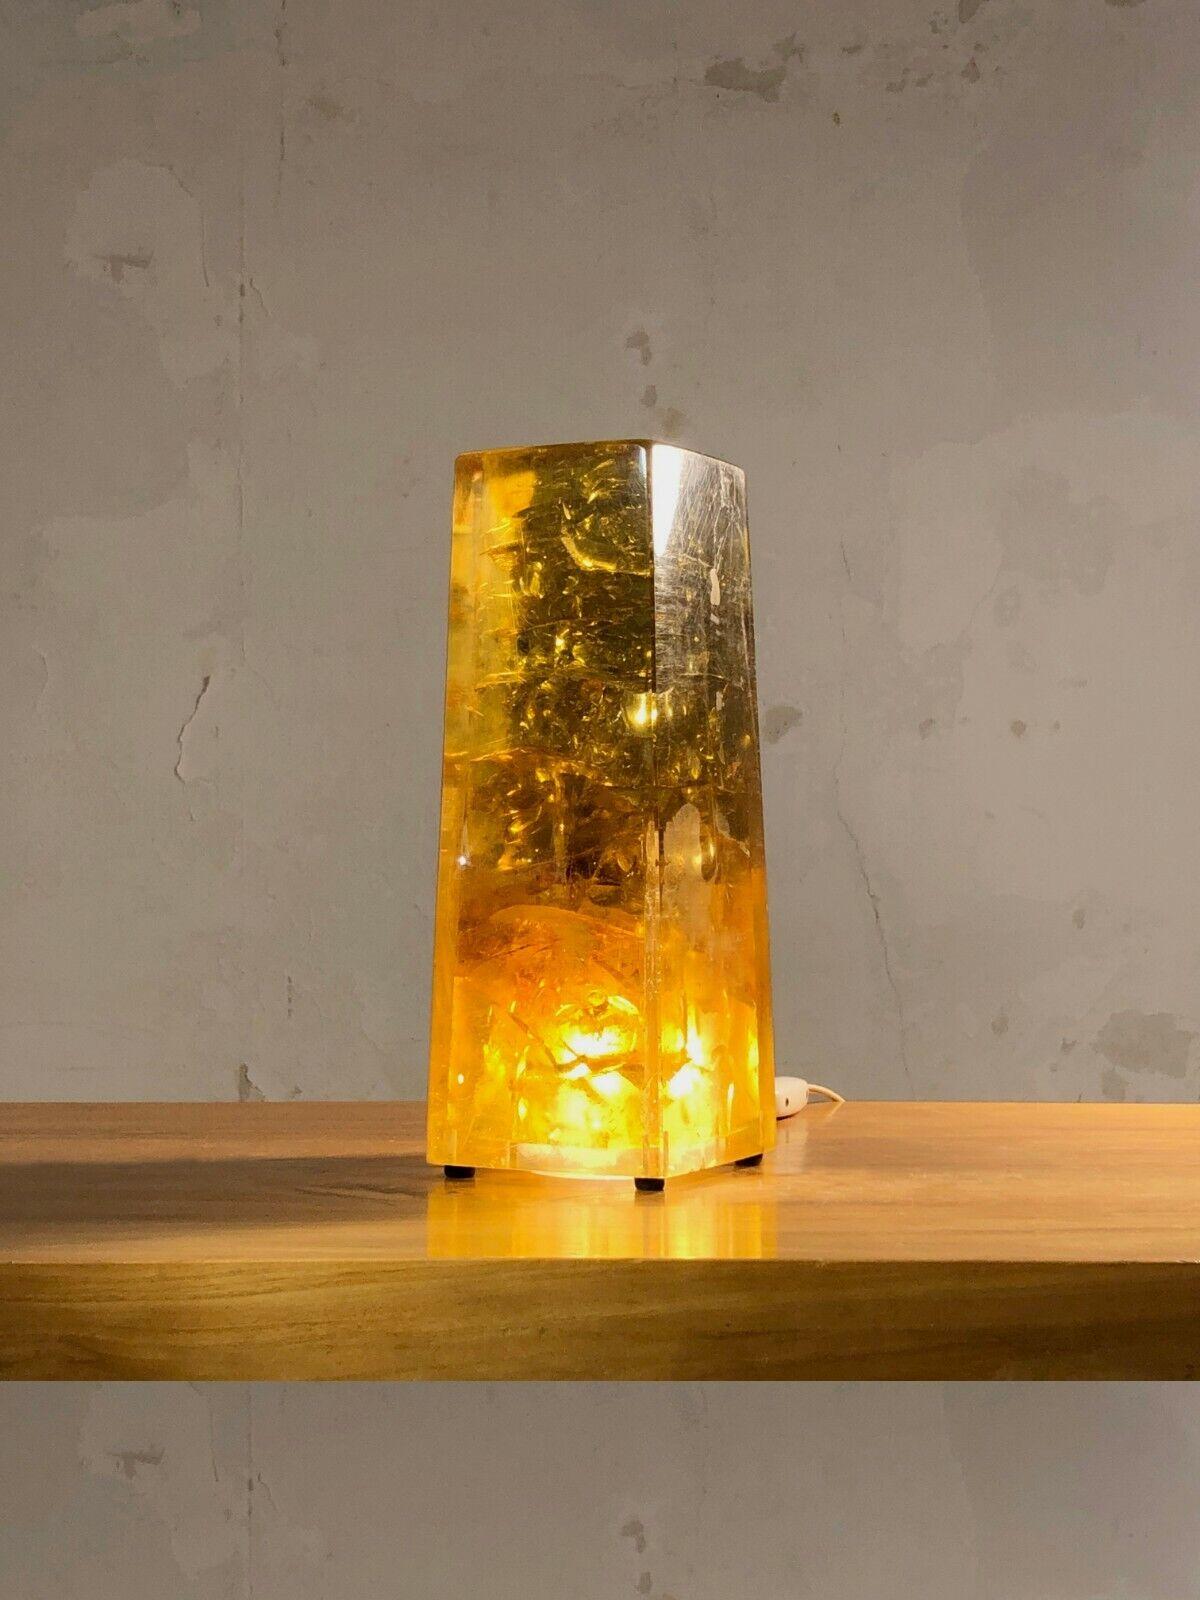 DESCRIPTION : Une exceptionnelle et sculpturale lampe de table ou veilleuse monolythique, Post-Moderniste, Pop, Space-Age, dans un bloc de résine fractale jaune ambre massif, éclairée en transparence par une ampoule encastrée au centre de la base de